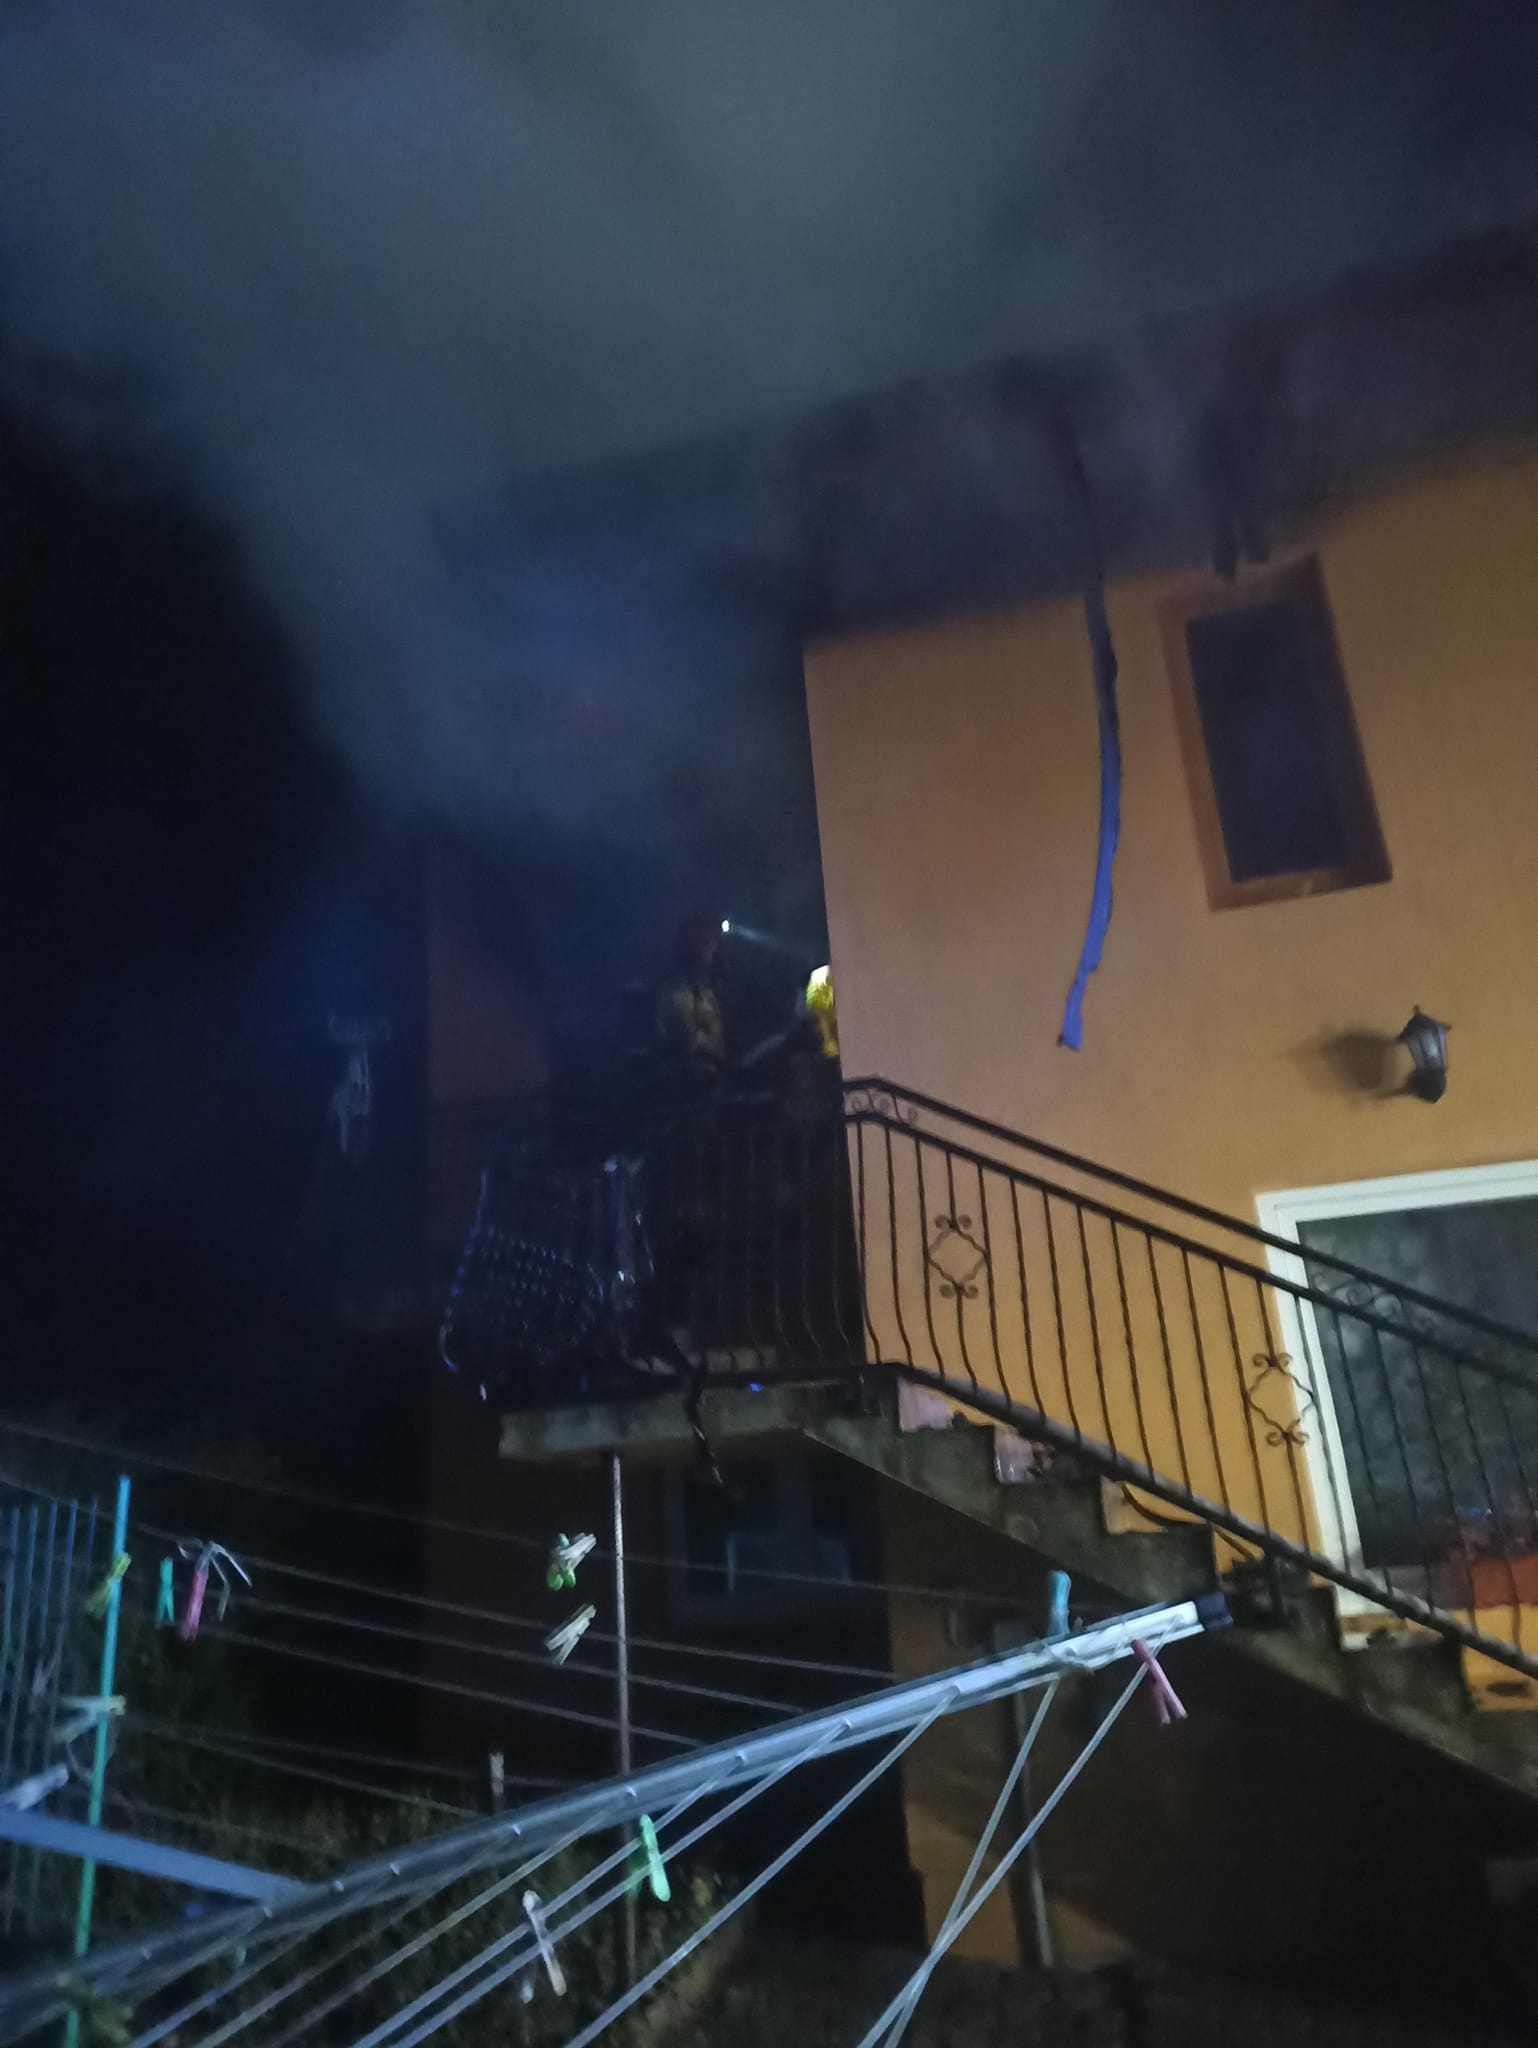 Kilka zastępów straży pożarnej walczyło z ogniem. Częściowo spłonął budynek mieszkalny (zdjęcia)